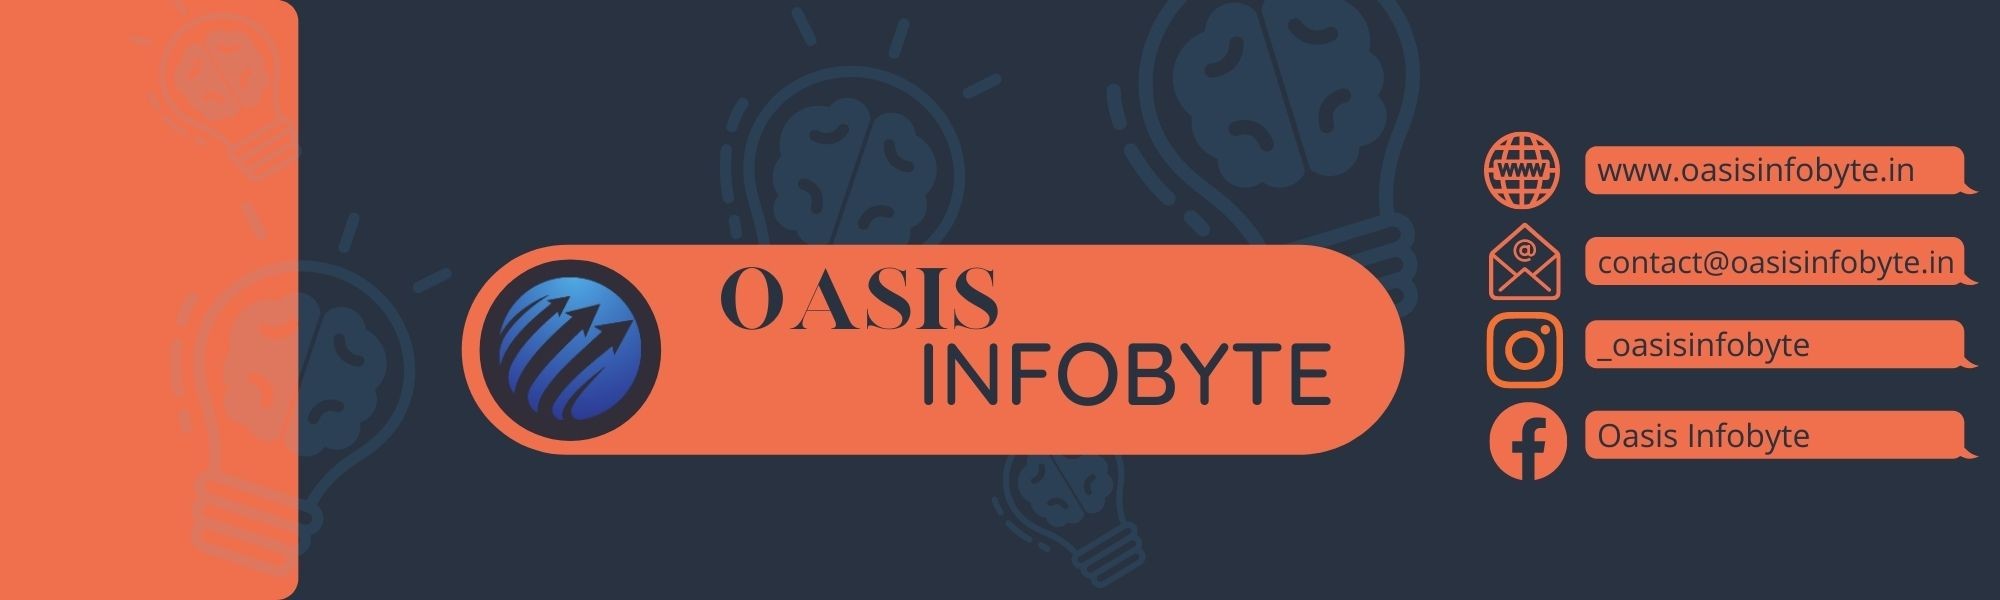 Oasis Infobyte | LinkedIn